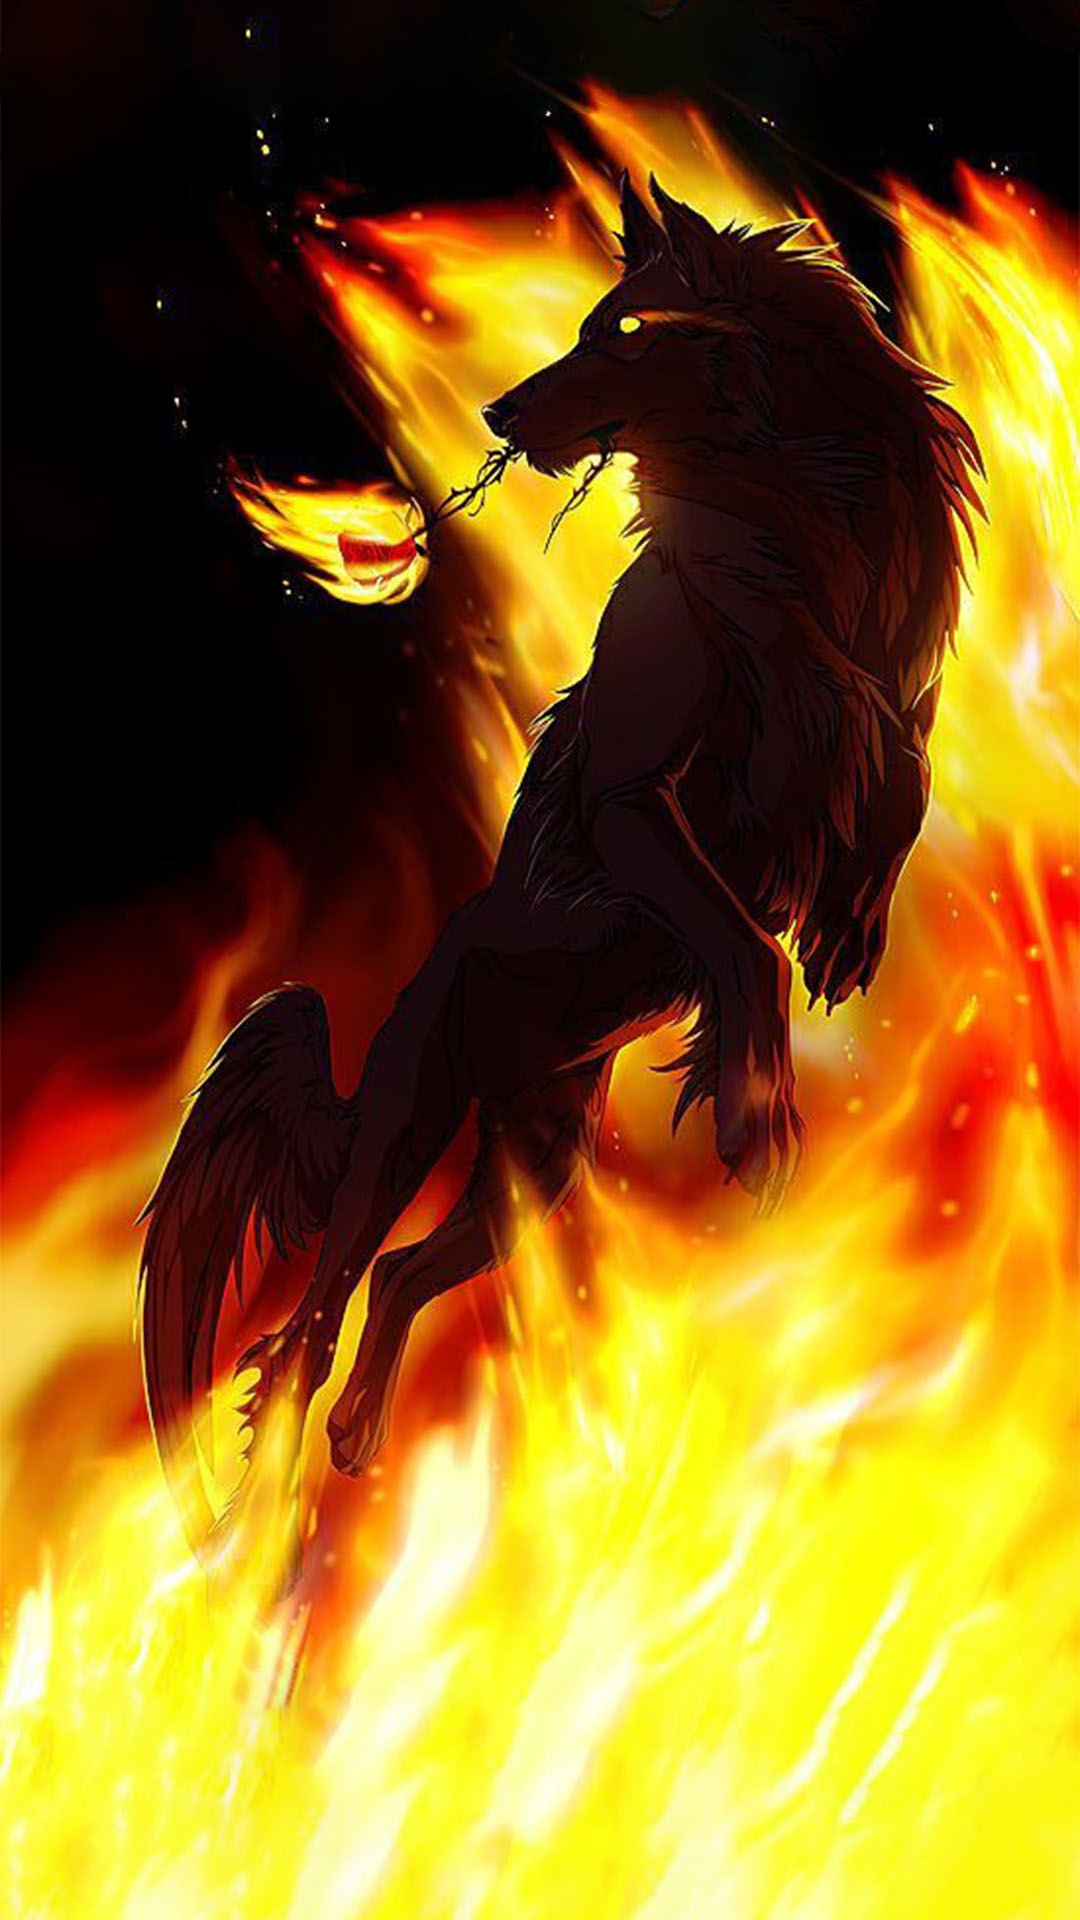 Hình ảnh chó sói lửa